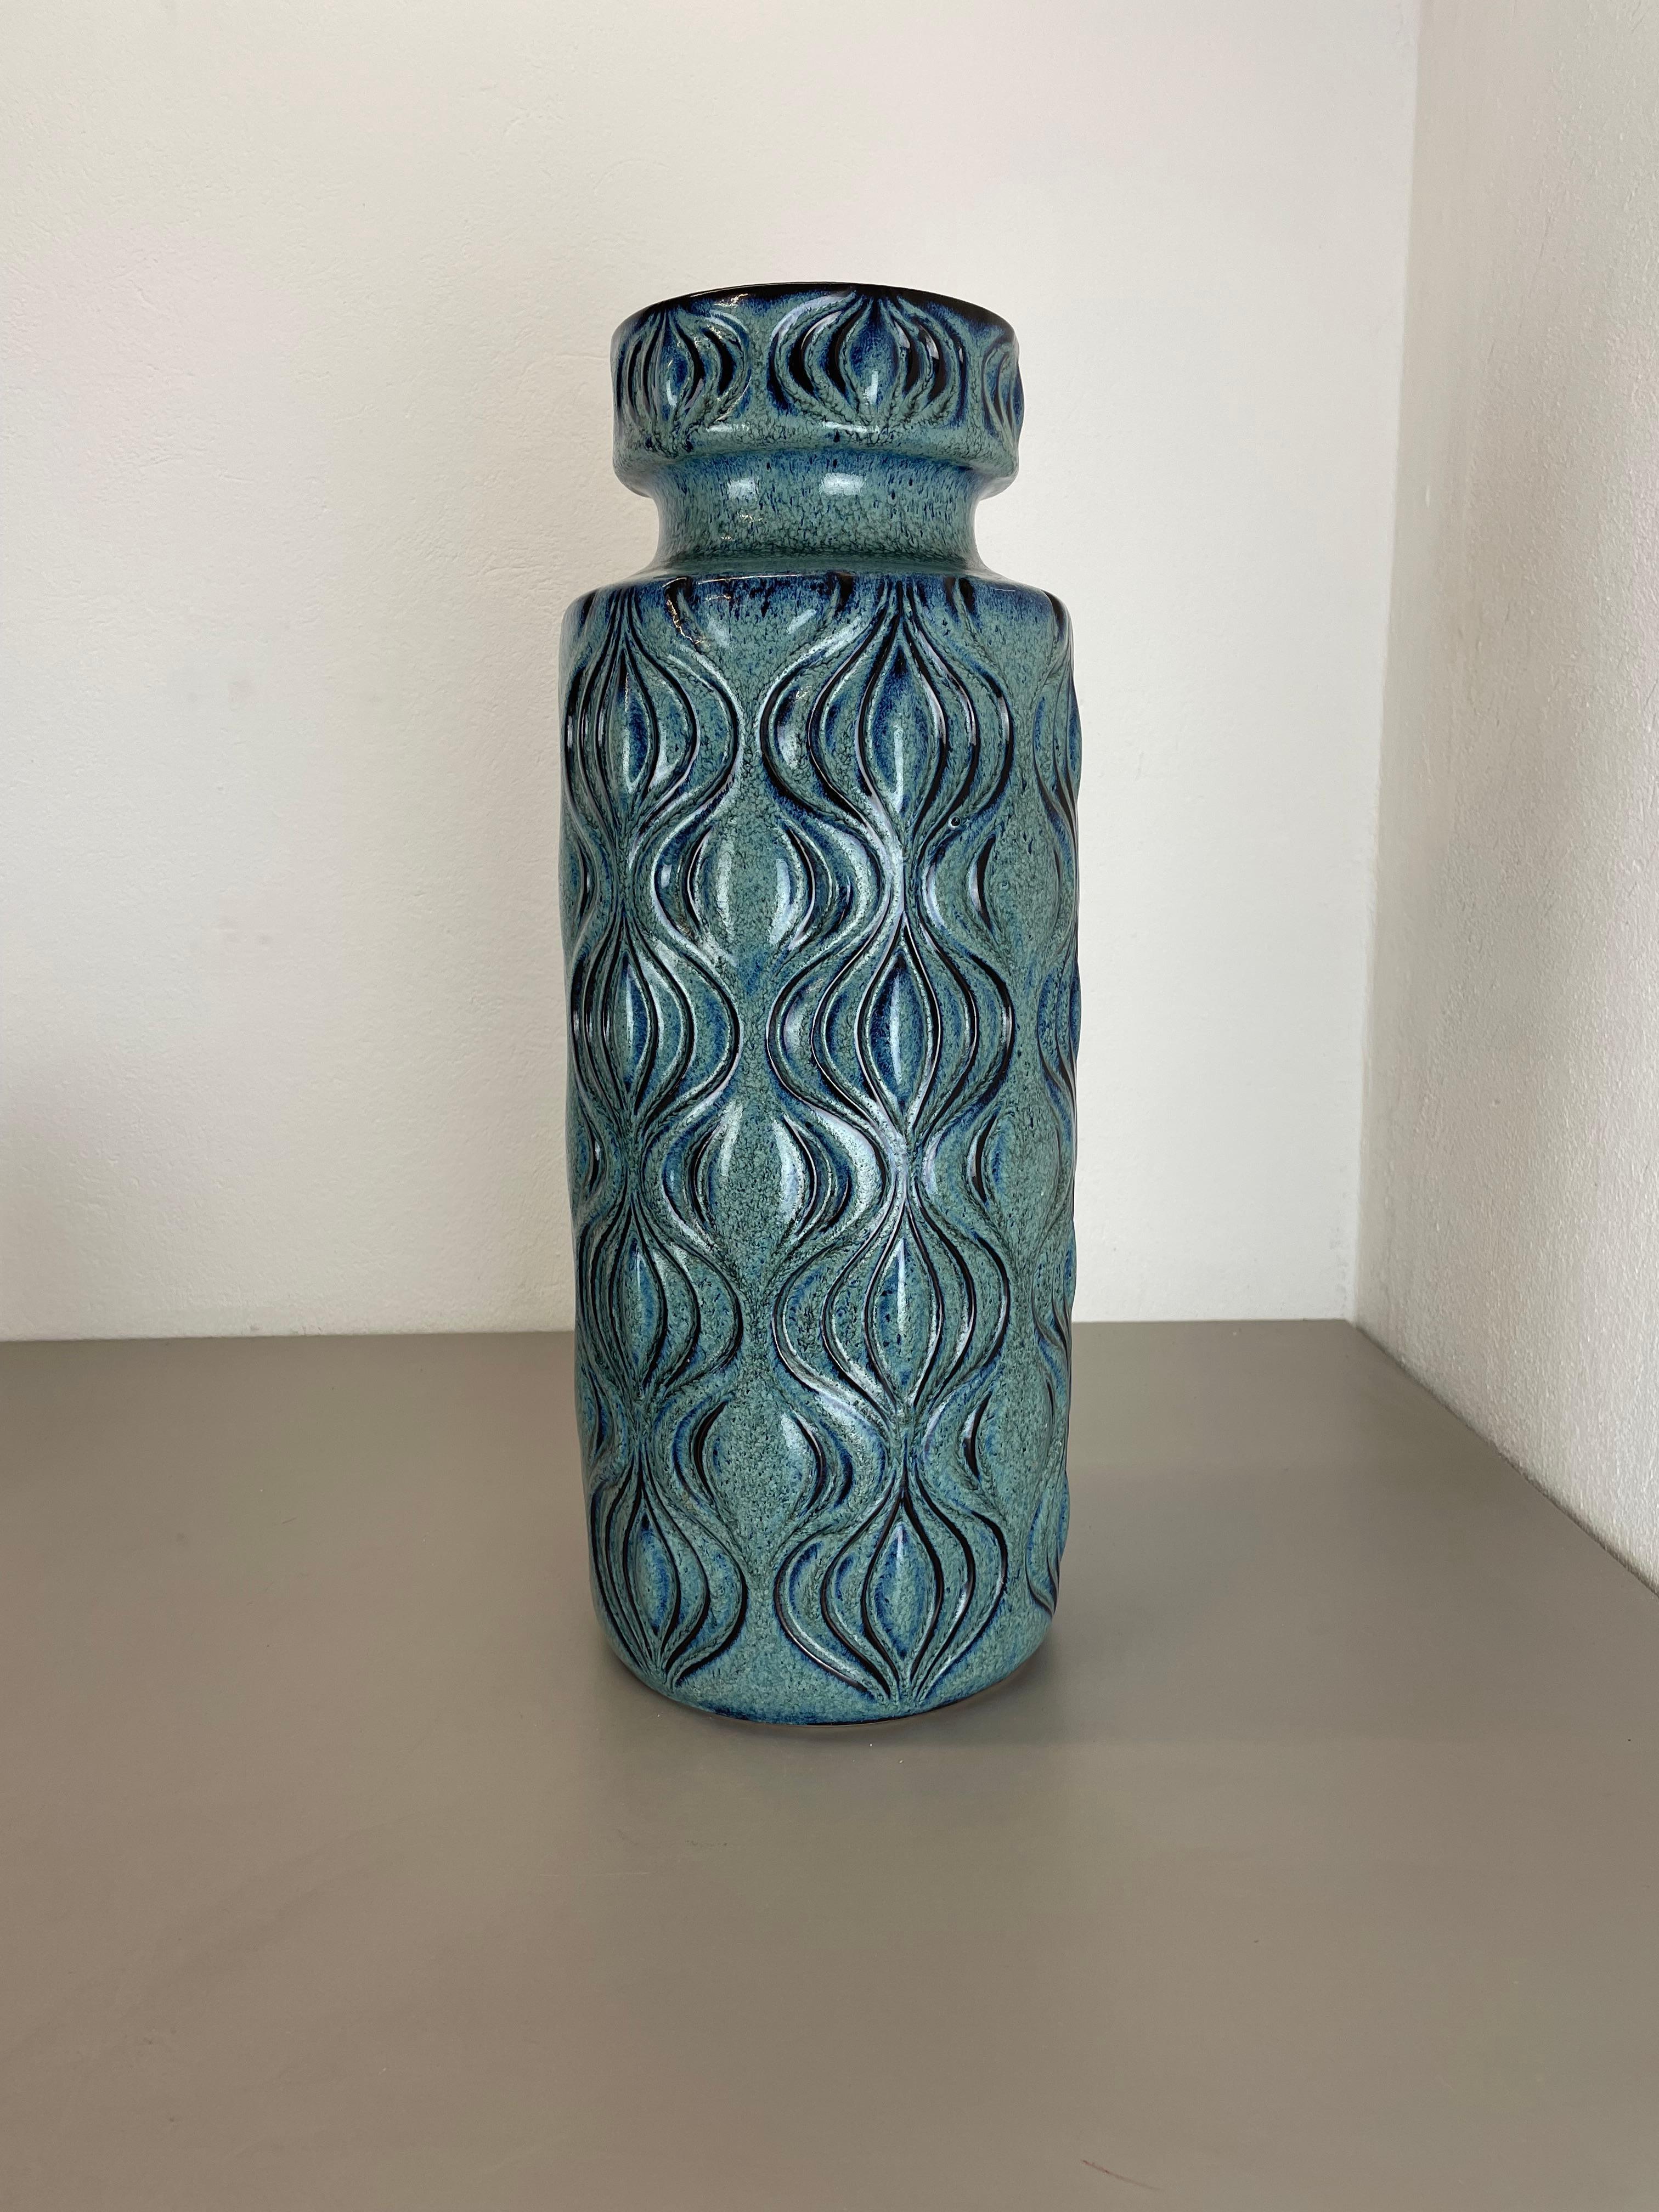 Article :

Vase d'art en lave grasse


Producteur :

Scheurich, Allemagne


Design :

Modèle ONION



Décennie :

1970s


Description :

Ce vase vintage original a été produit dans les années 1970 en Allemagne. Il est réalisé en porcelaine dans une